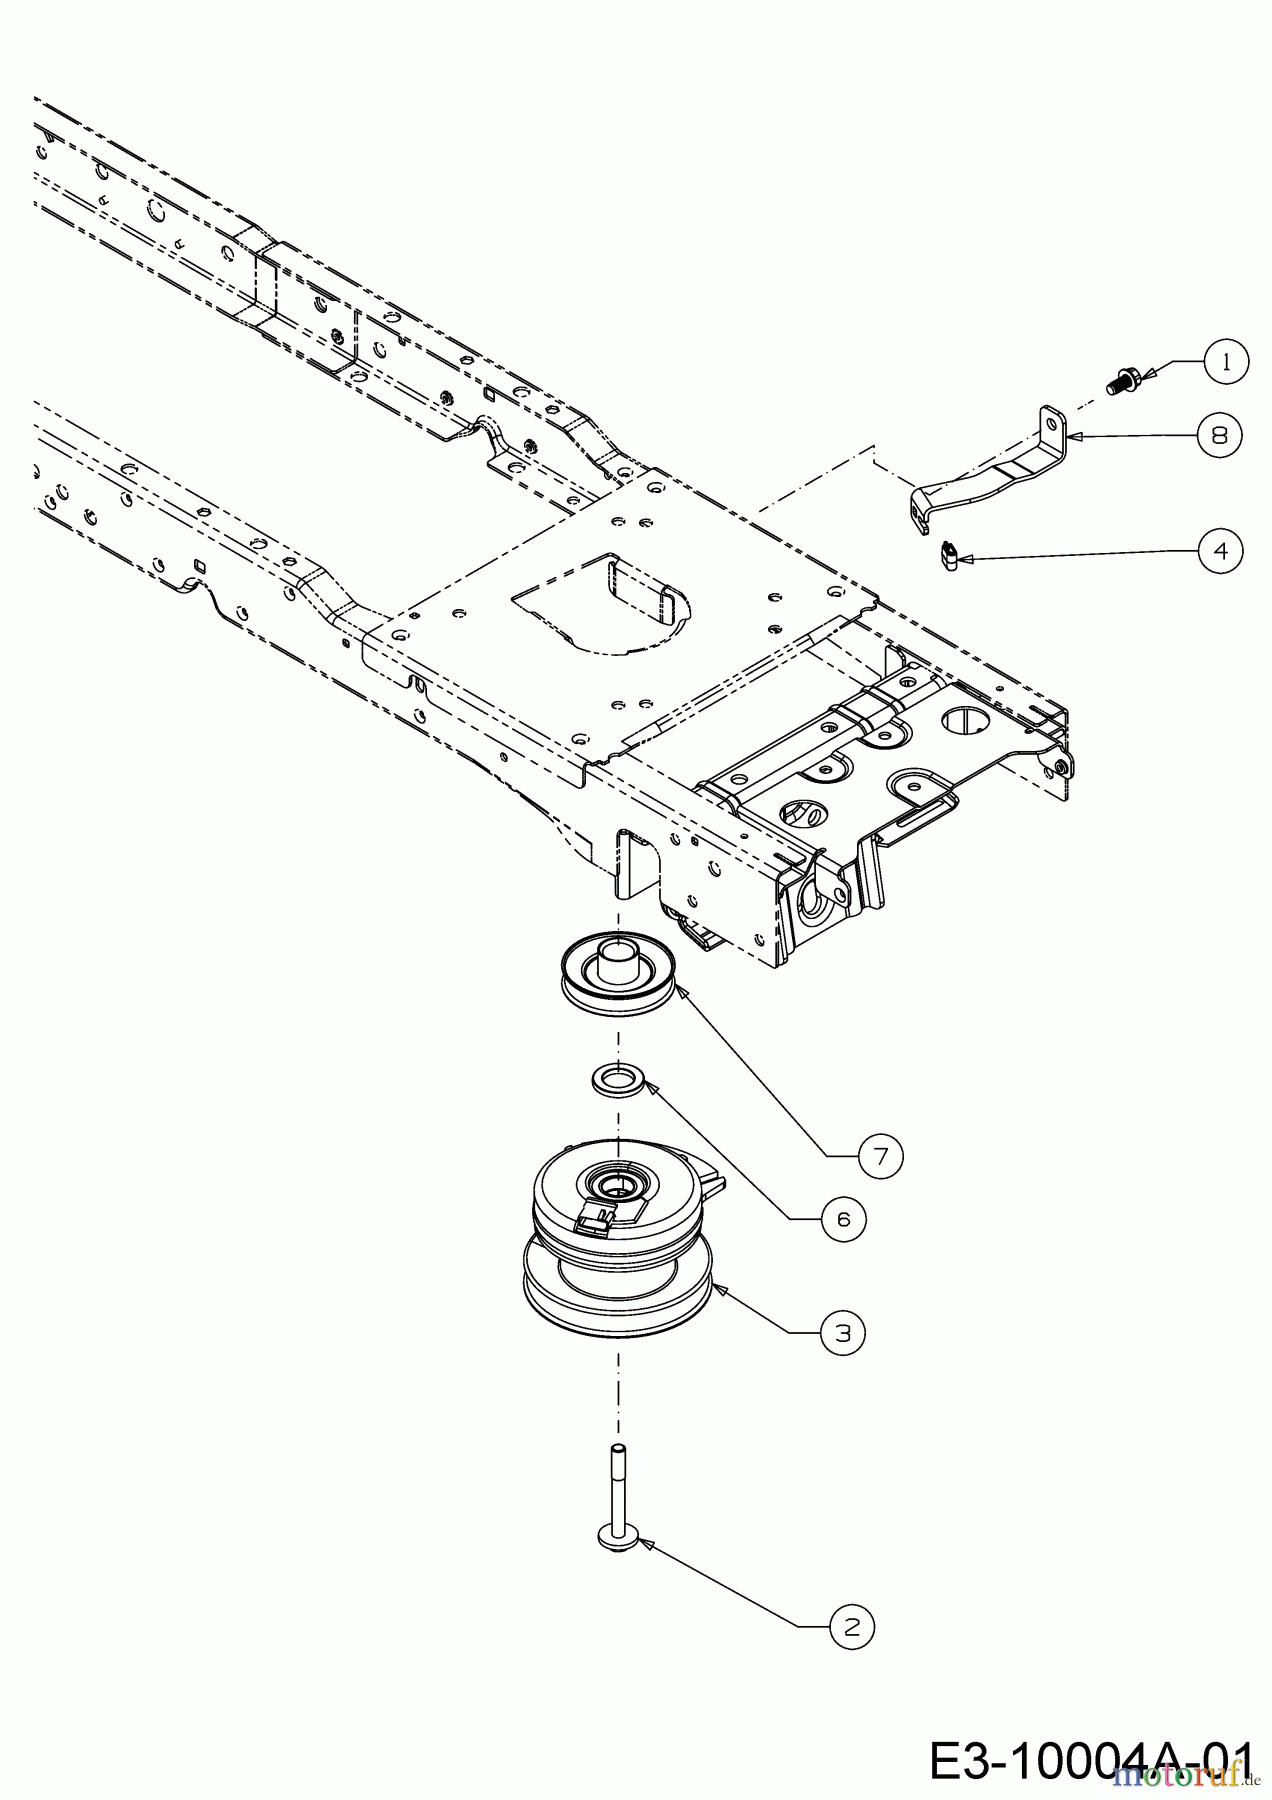  Cub Cadet Rasentraktoren XT1 OS107 13A8A1CS603  (2018) Elektromagnetkupplung, Motorkeilriemenscheibe